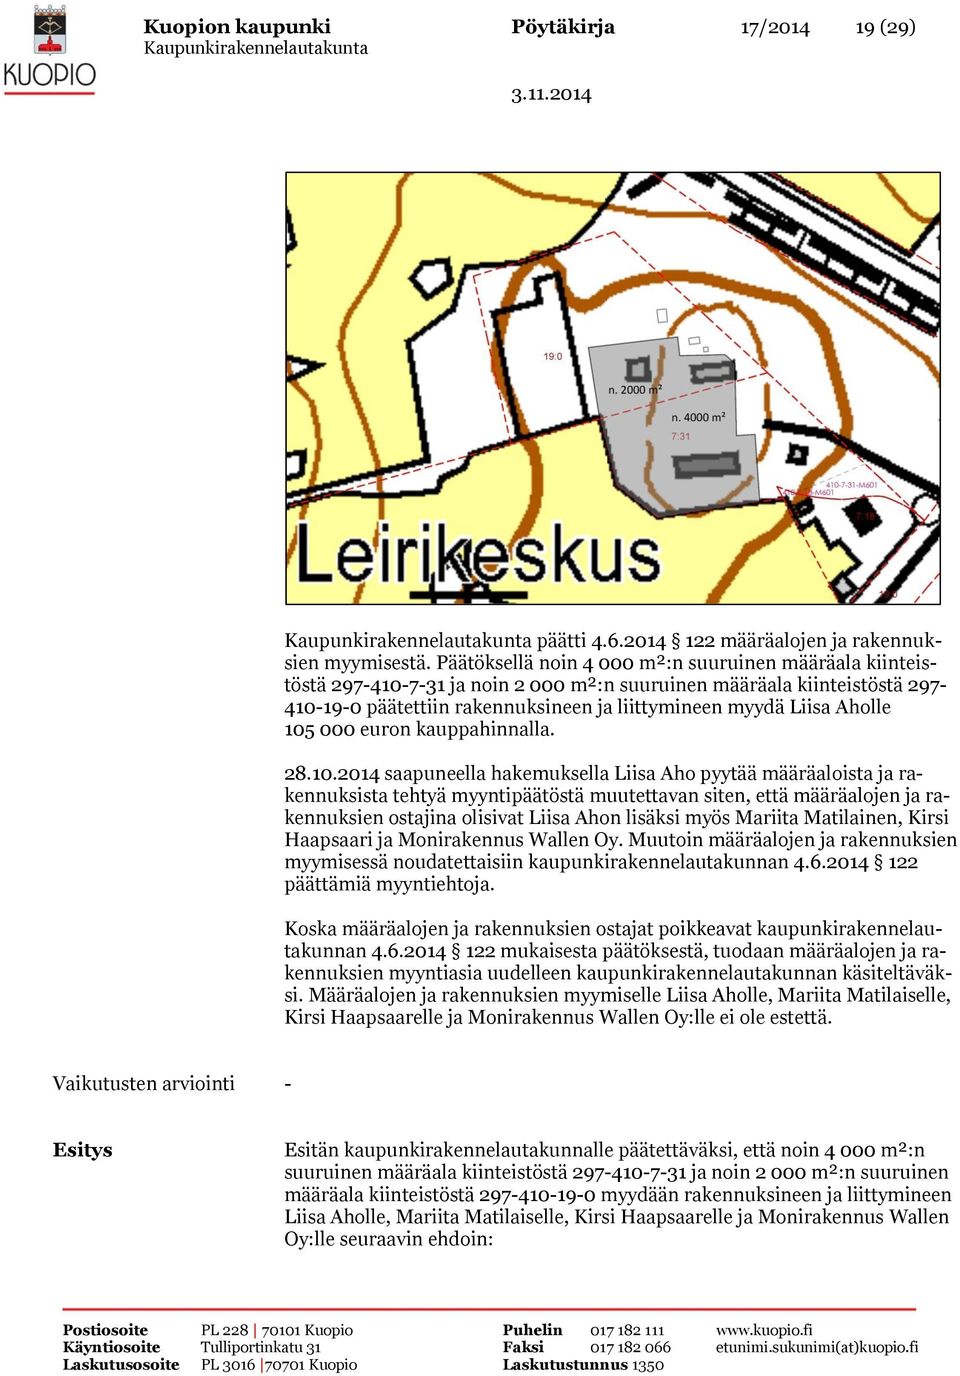 105 000 euron kauppahinnalla. 28.10.2014 saapuneella hakemuksella Liisa Aho pyytää määräaloista ja rakennuksista tehtyä myyntipäätöstä muutettavan siten, että määräalojen ja rakennuksien ostajina